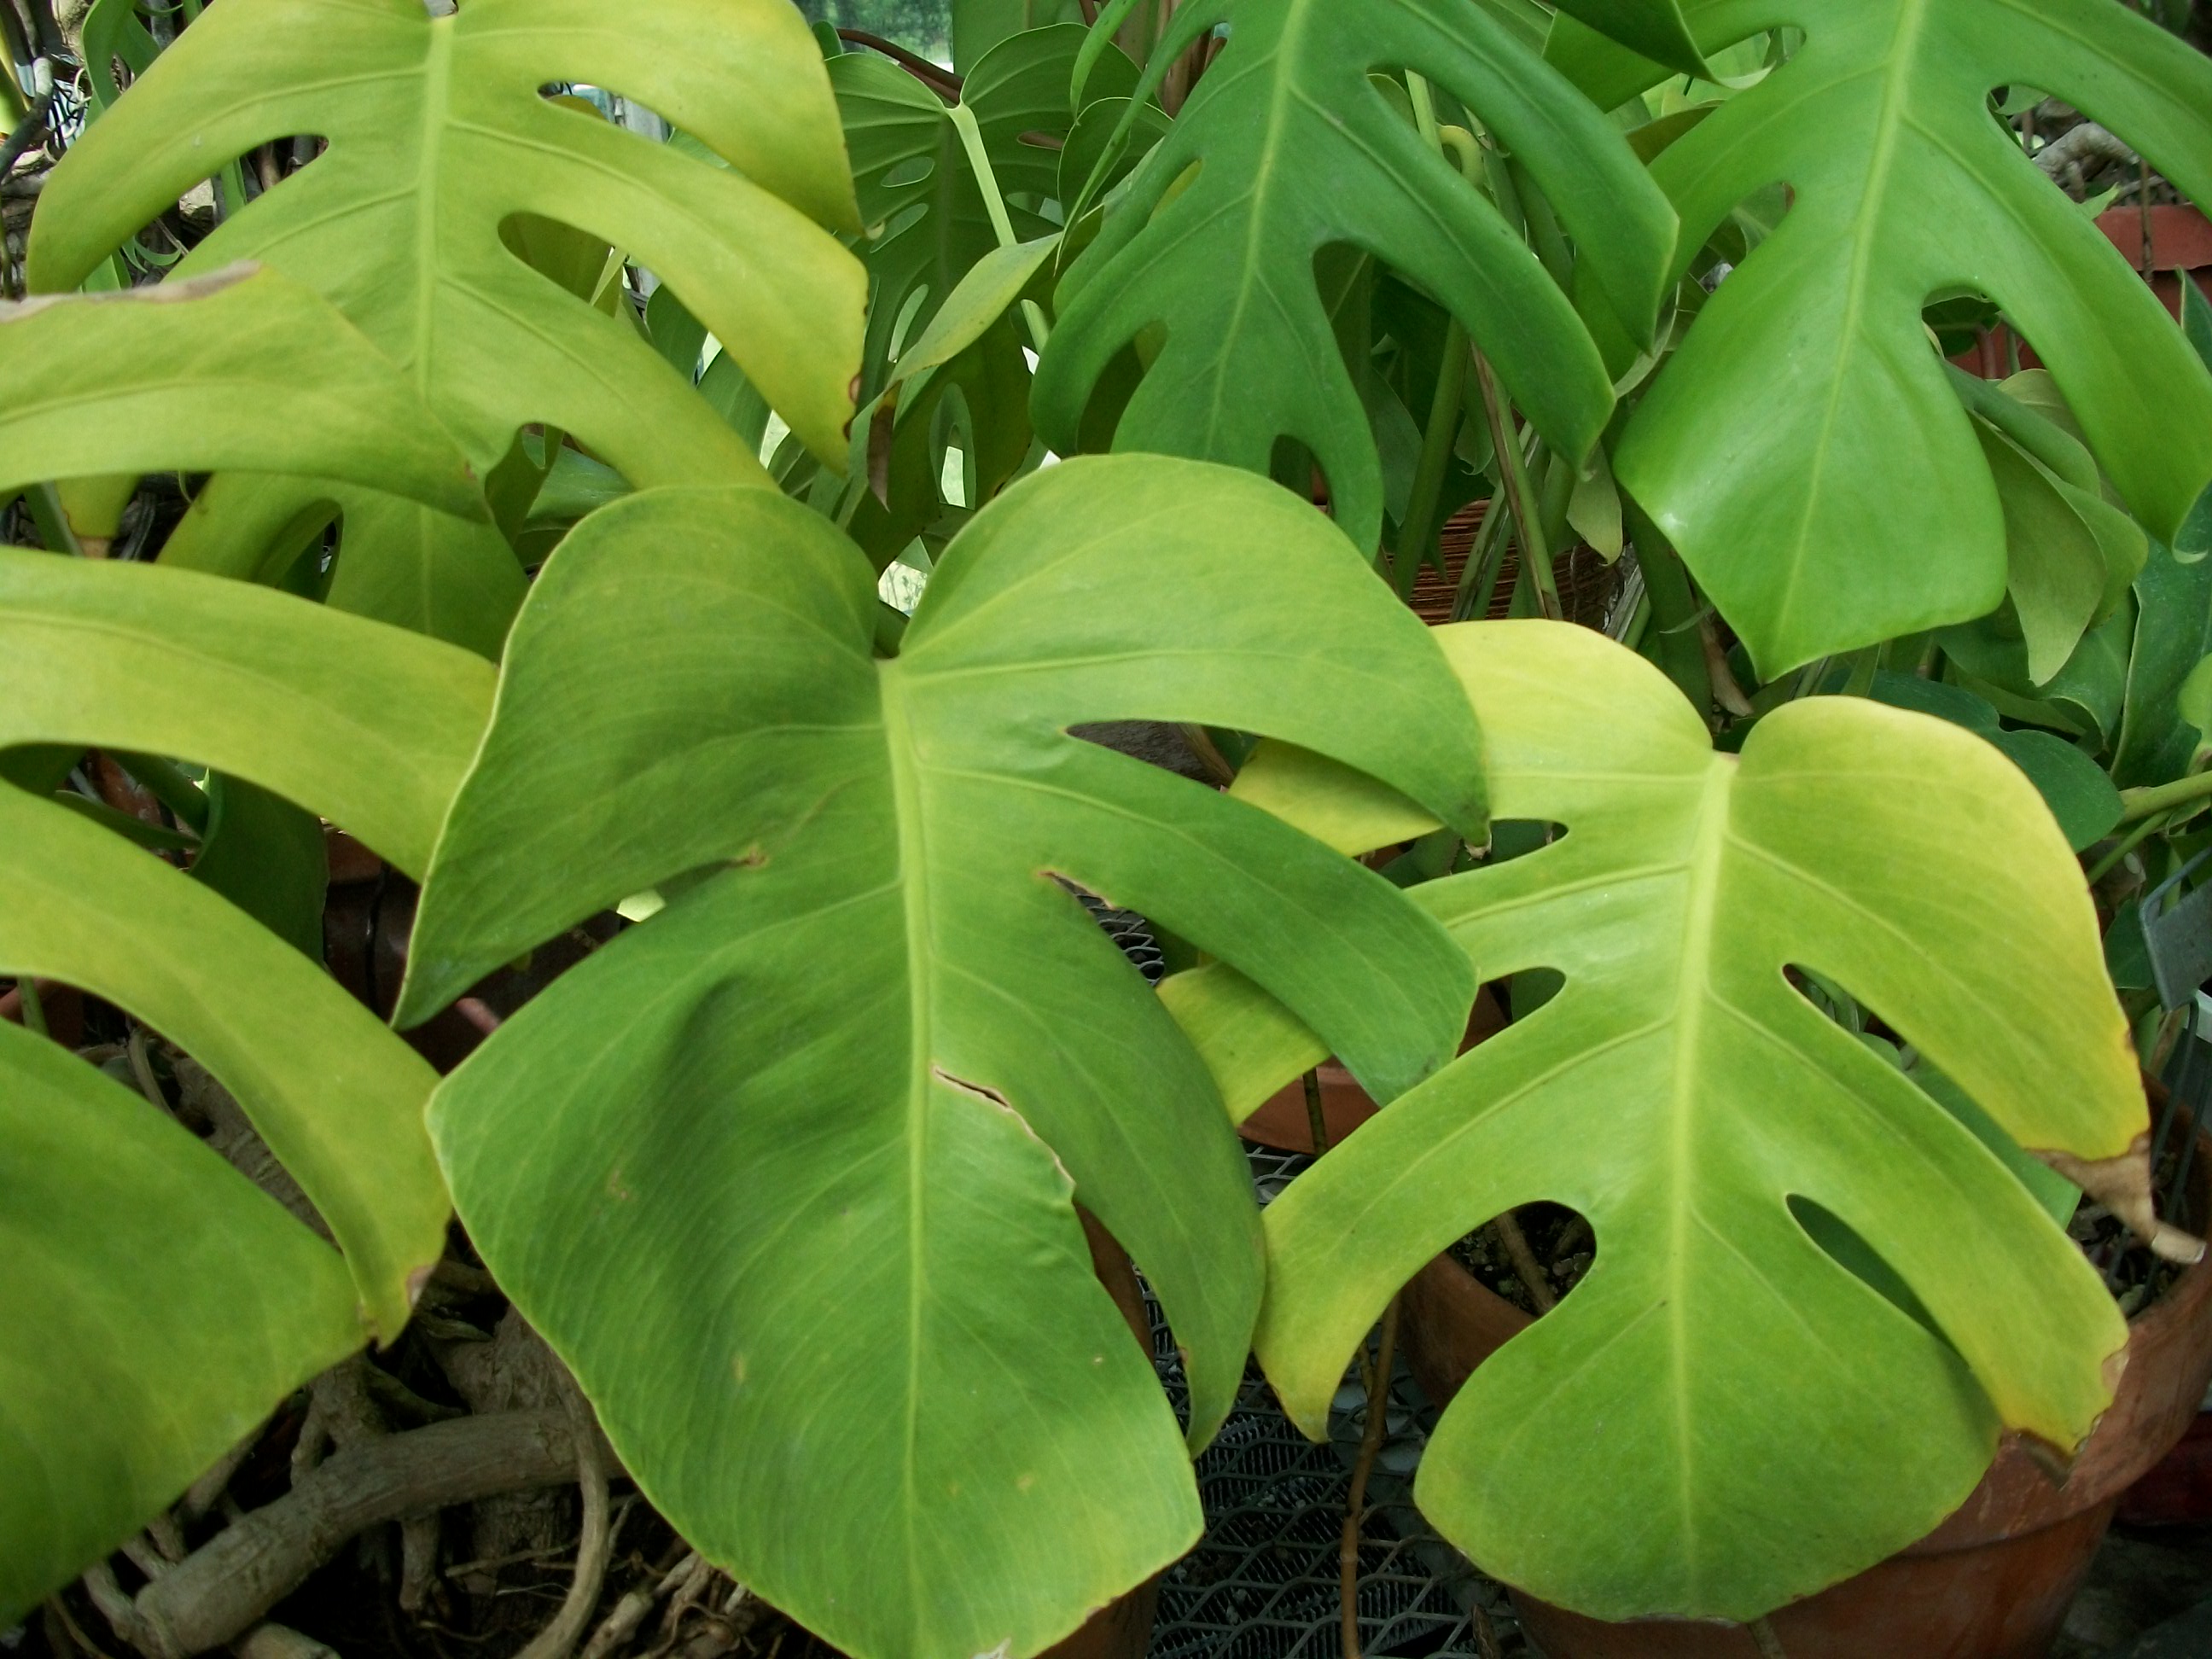 Download Photos Of Tropical Plants | Solidaria Garden